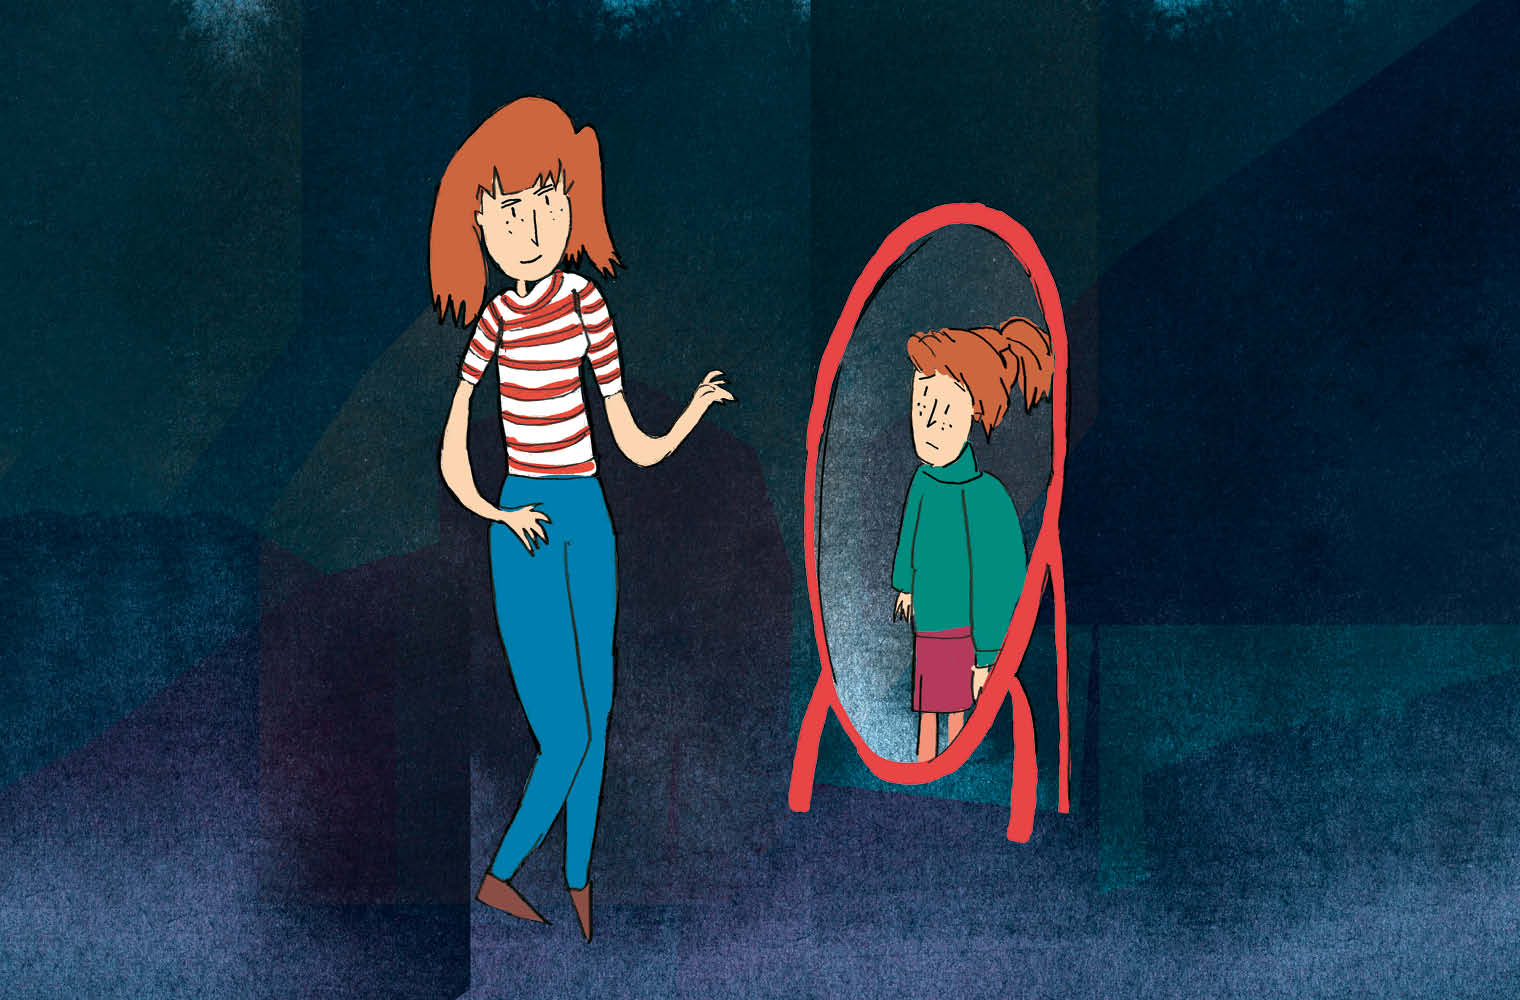 Eine junge Frau mit roten Haaren und gestreiftem Top lächelt neben einem Spiegel, der ein trauriges Mädchen zeigt. Die beiden Figuren haben ähnliches Aussehen, aber unterschiedliche Emotionen. Dunkelblaue Töne im Hintergrund schaffen eine ernste Stimmung.